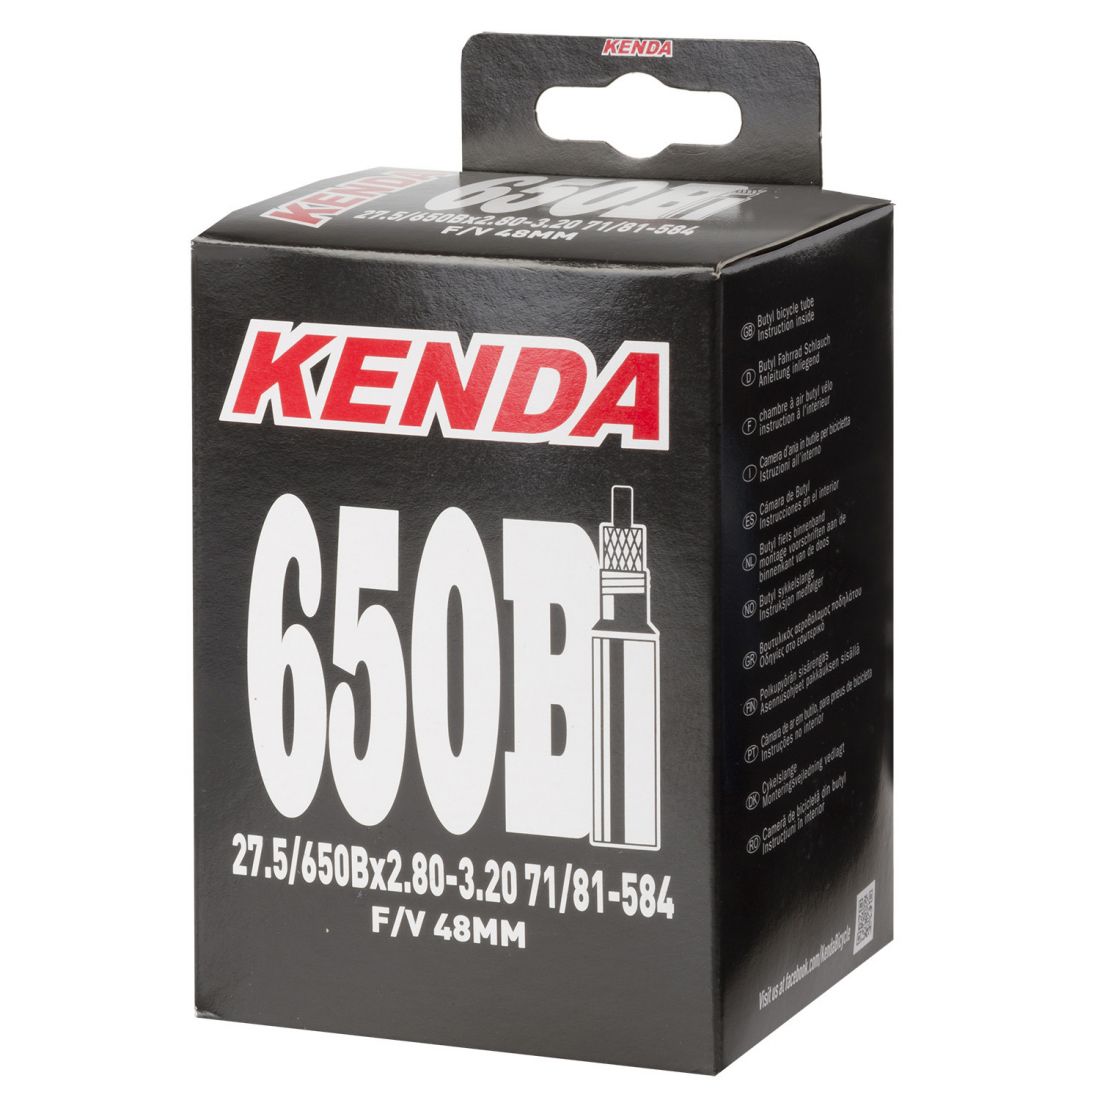 Камера 27,5"+ спорт 48мм 5-514408 широкая 2,80-3,20 (71/81-584) (50) KENDA